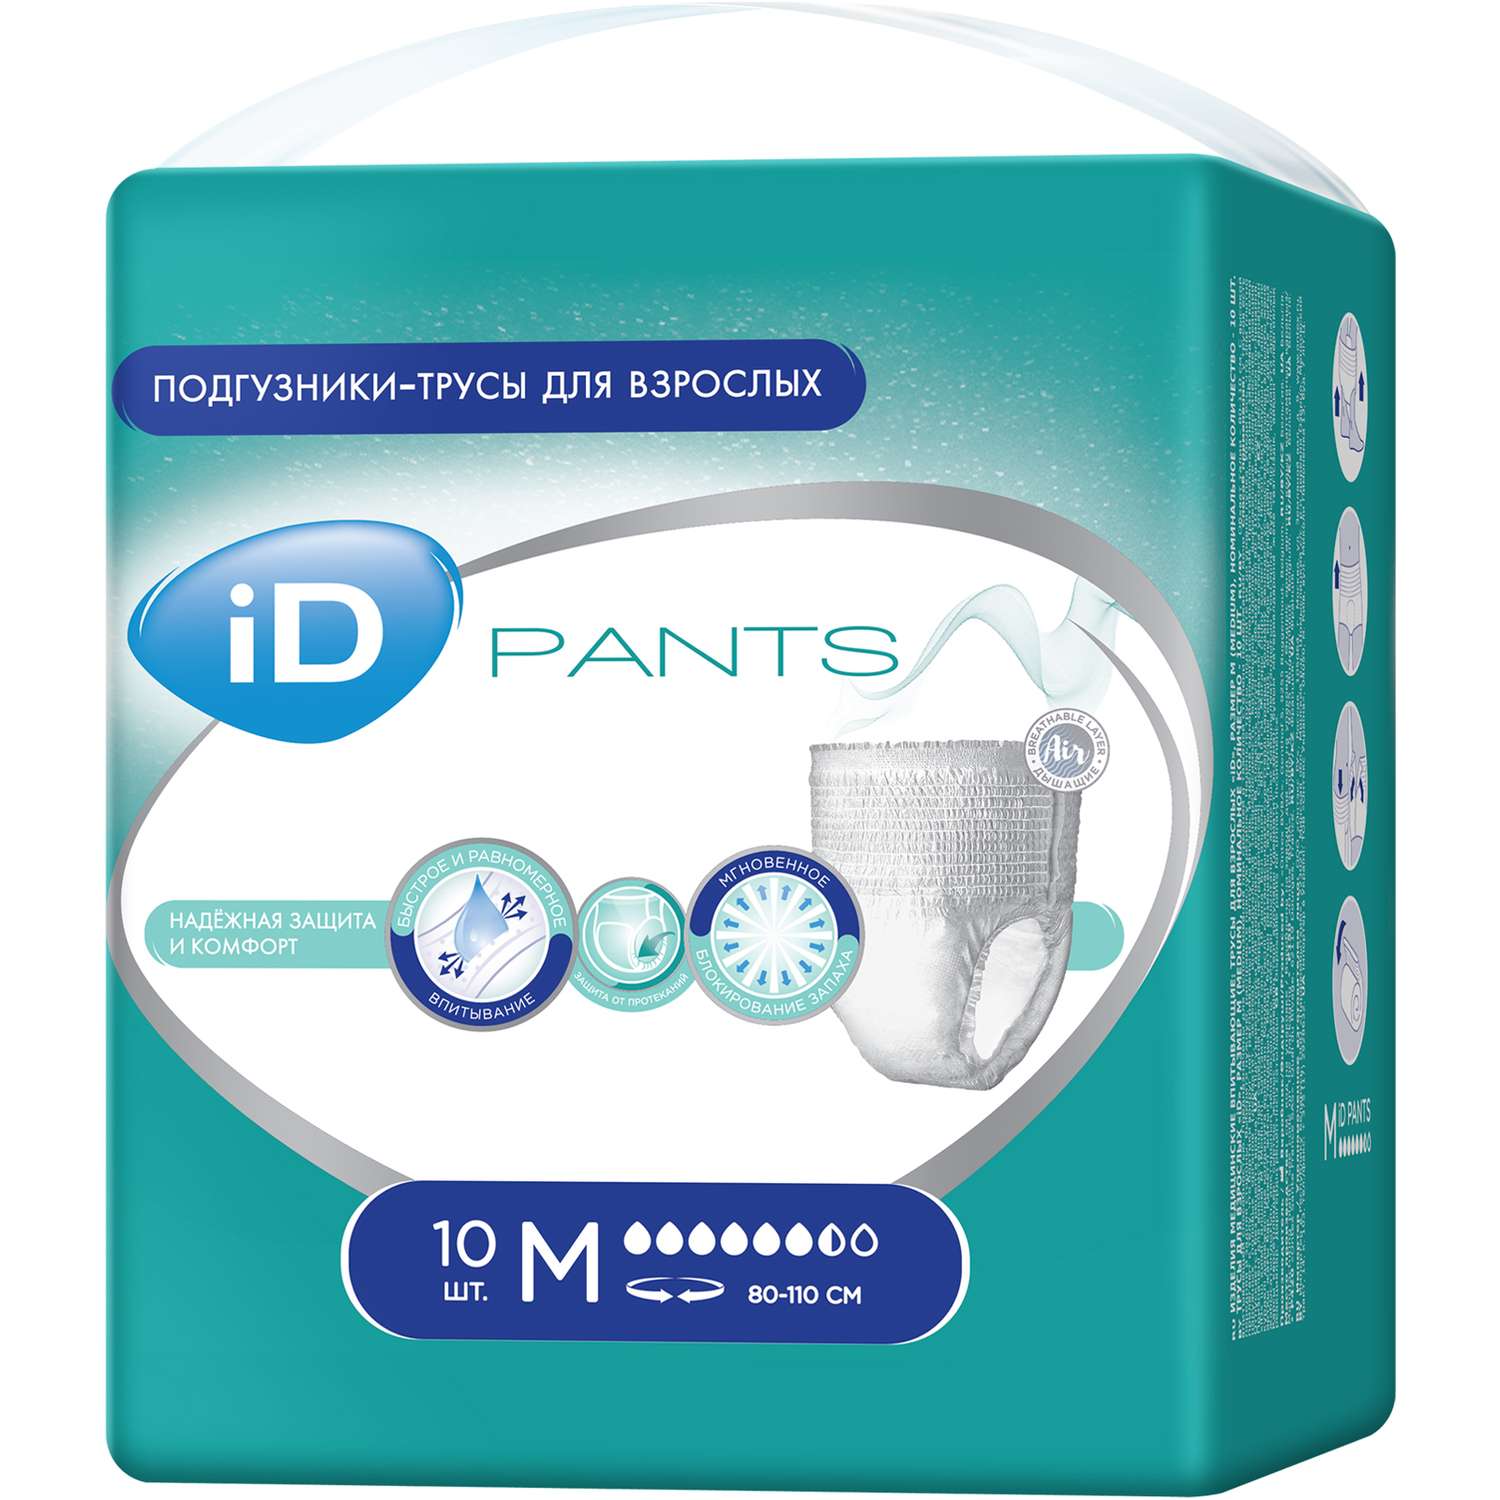 Подгузники-трусы для взрослых iD Pants M 10 шт - фото 2